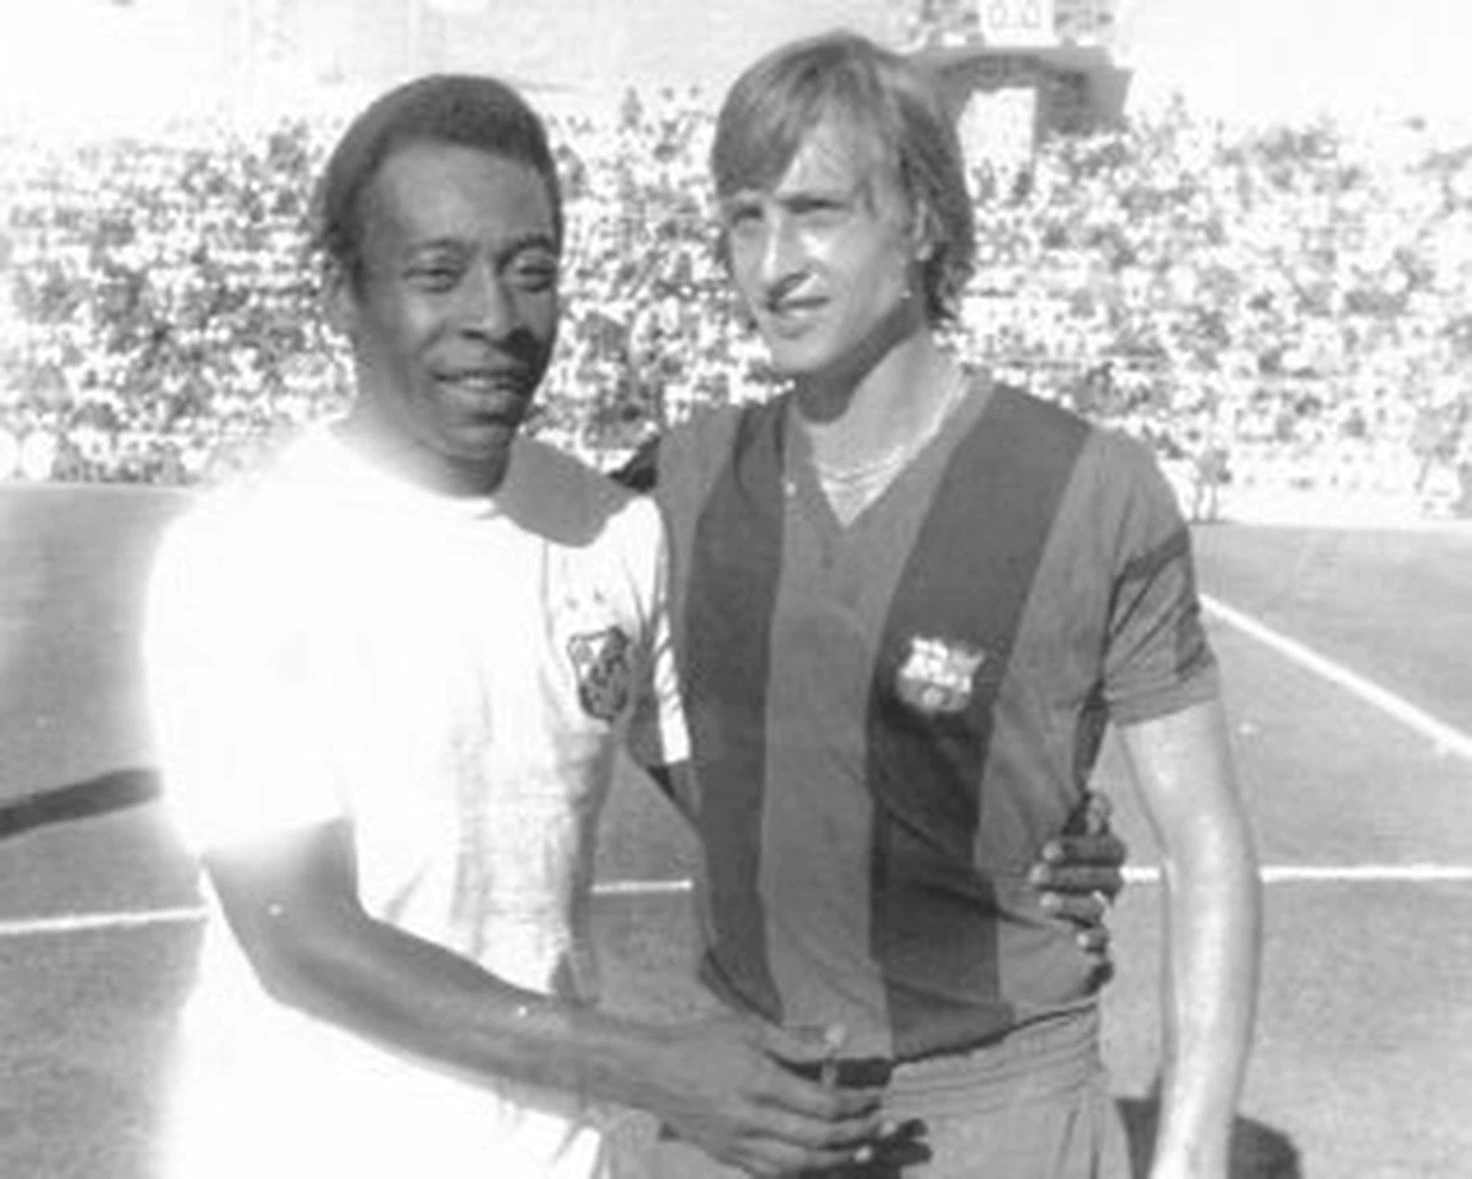 بيليه مع يوهان كرويف قبل مباراة بين سانتوس وبرشلونة في قادس ، ضمن بطولة رامون دي كارانزا عام 1974.